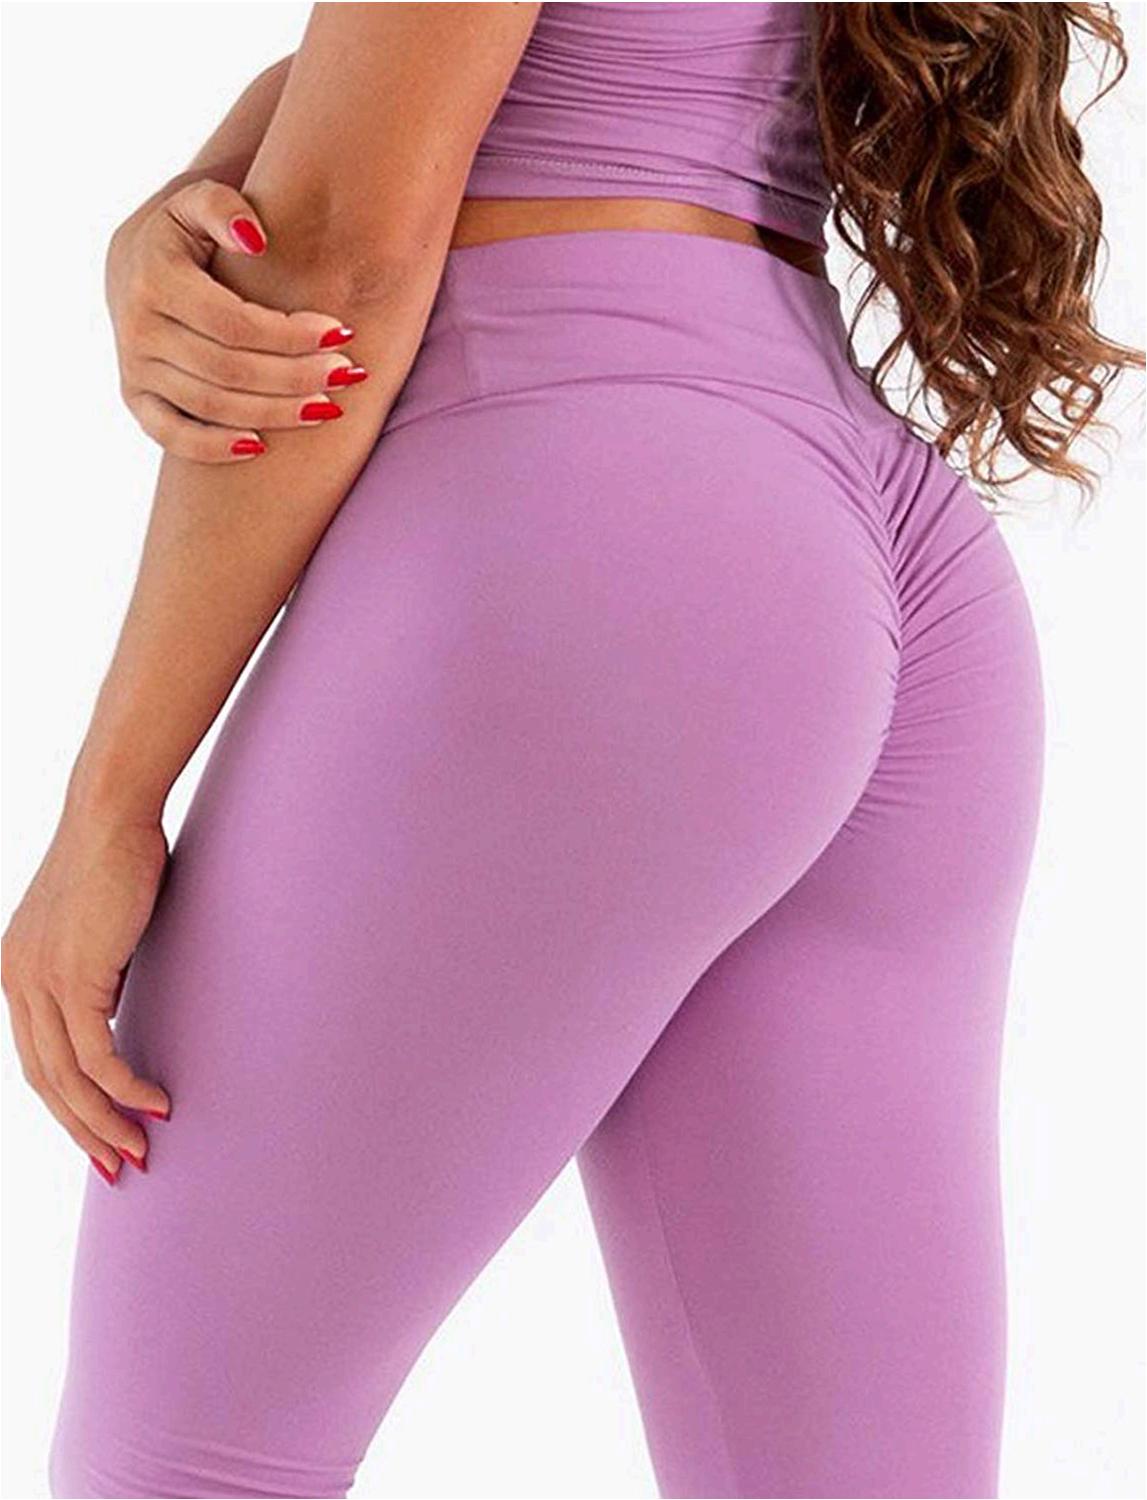 Women High Waisted Yoga Pants Workout Butt Lifting Scrunch